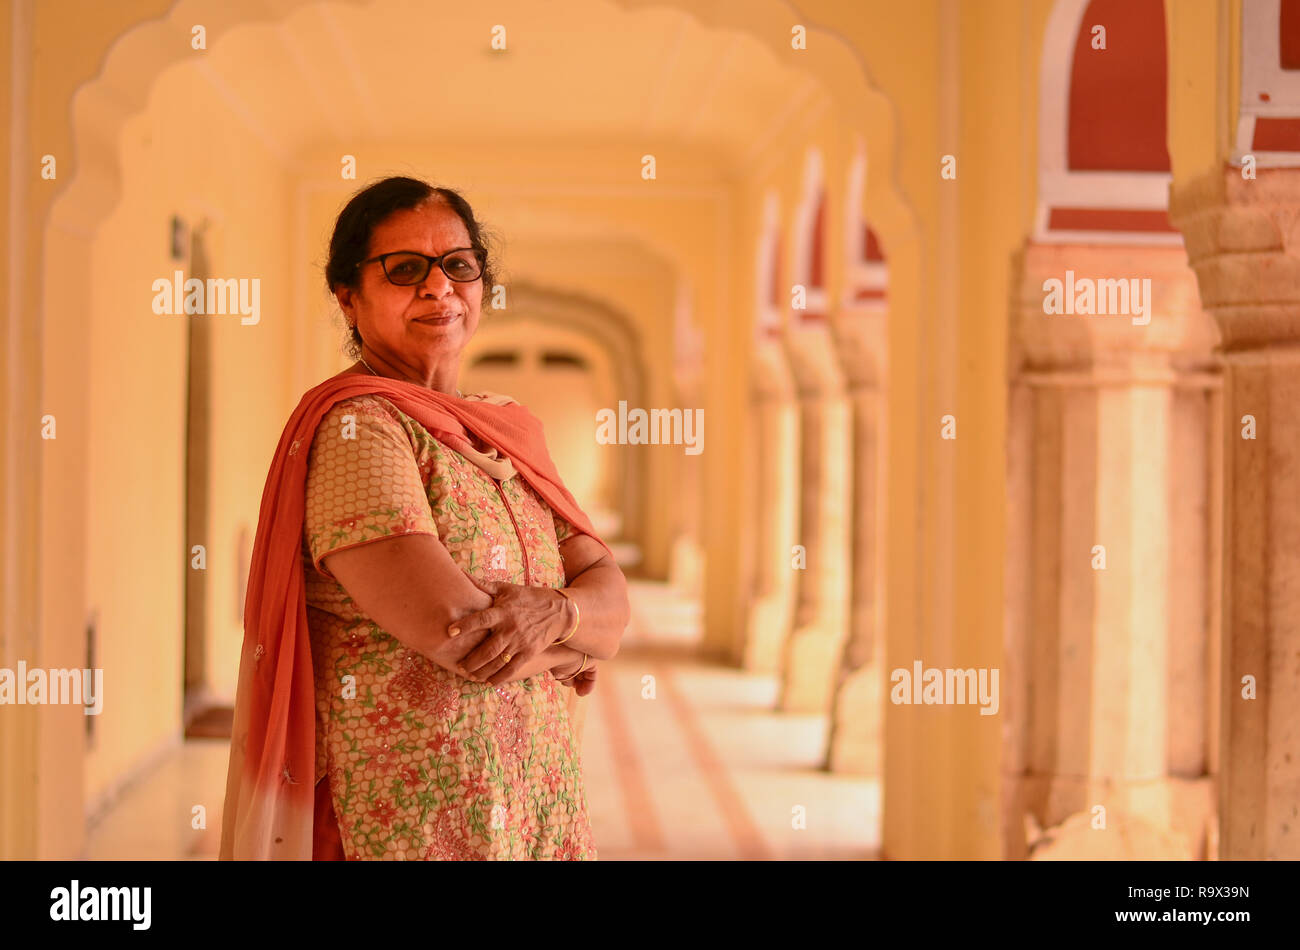 Professionnels à la recherche de vêtements traditionnels indiens senior dame répondre à poser dans le couloir de la palais de la ville. Banque D'Images